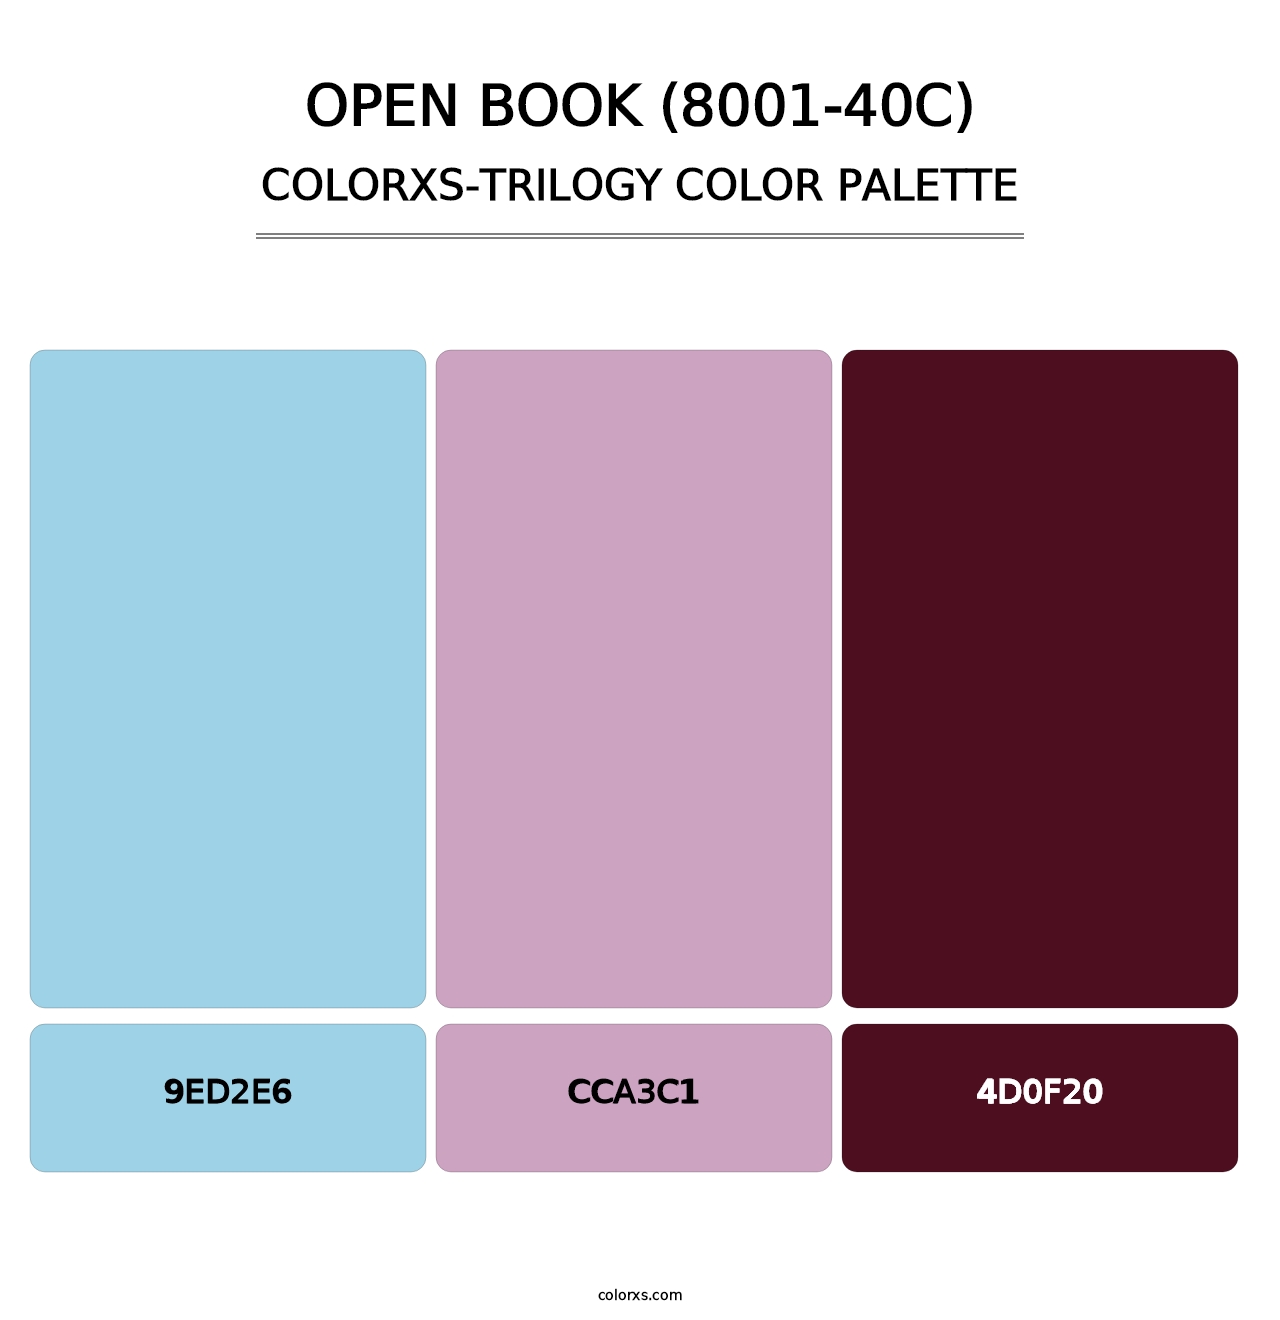 Open Book (8001-40C) - Colorxs Trilogy Palette